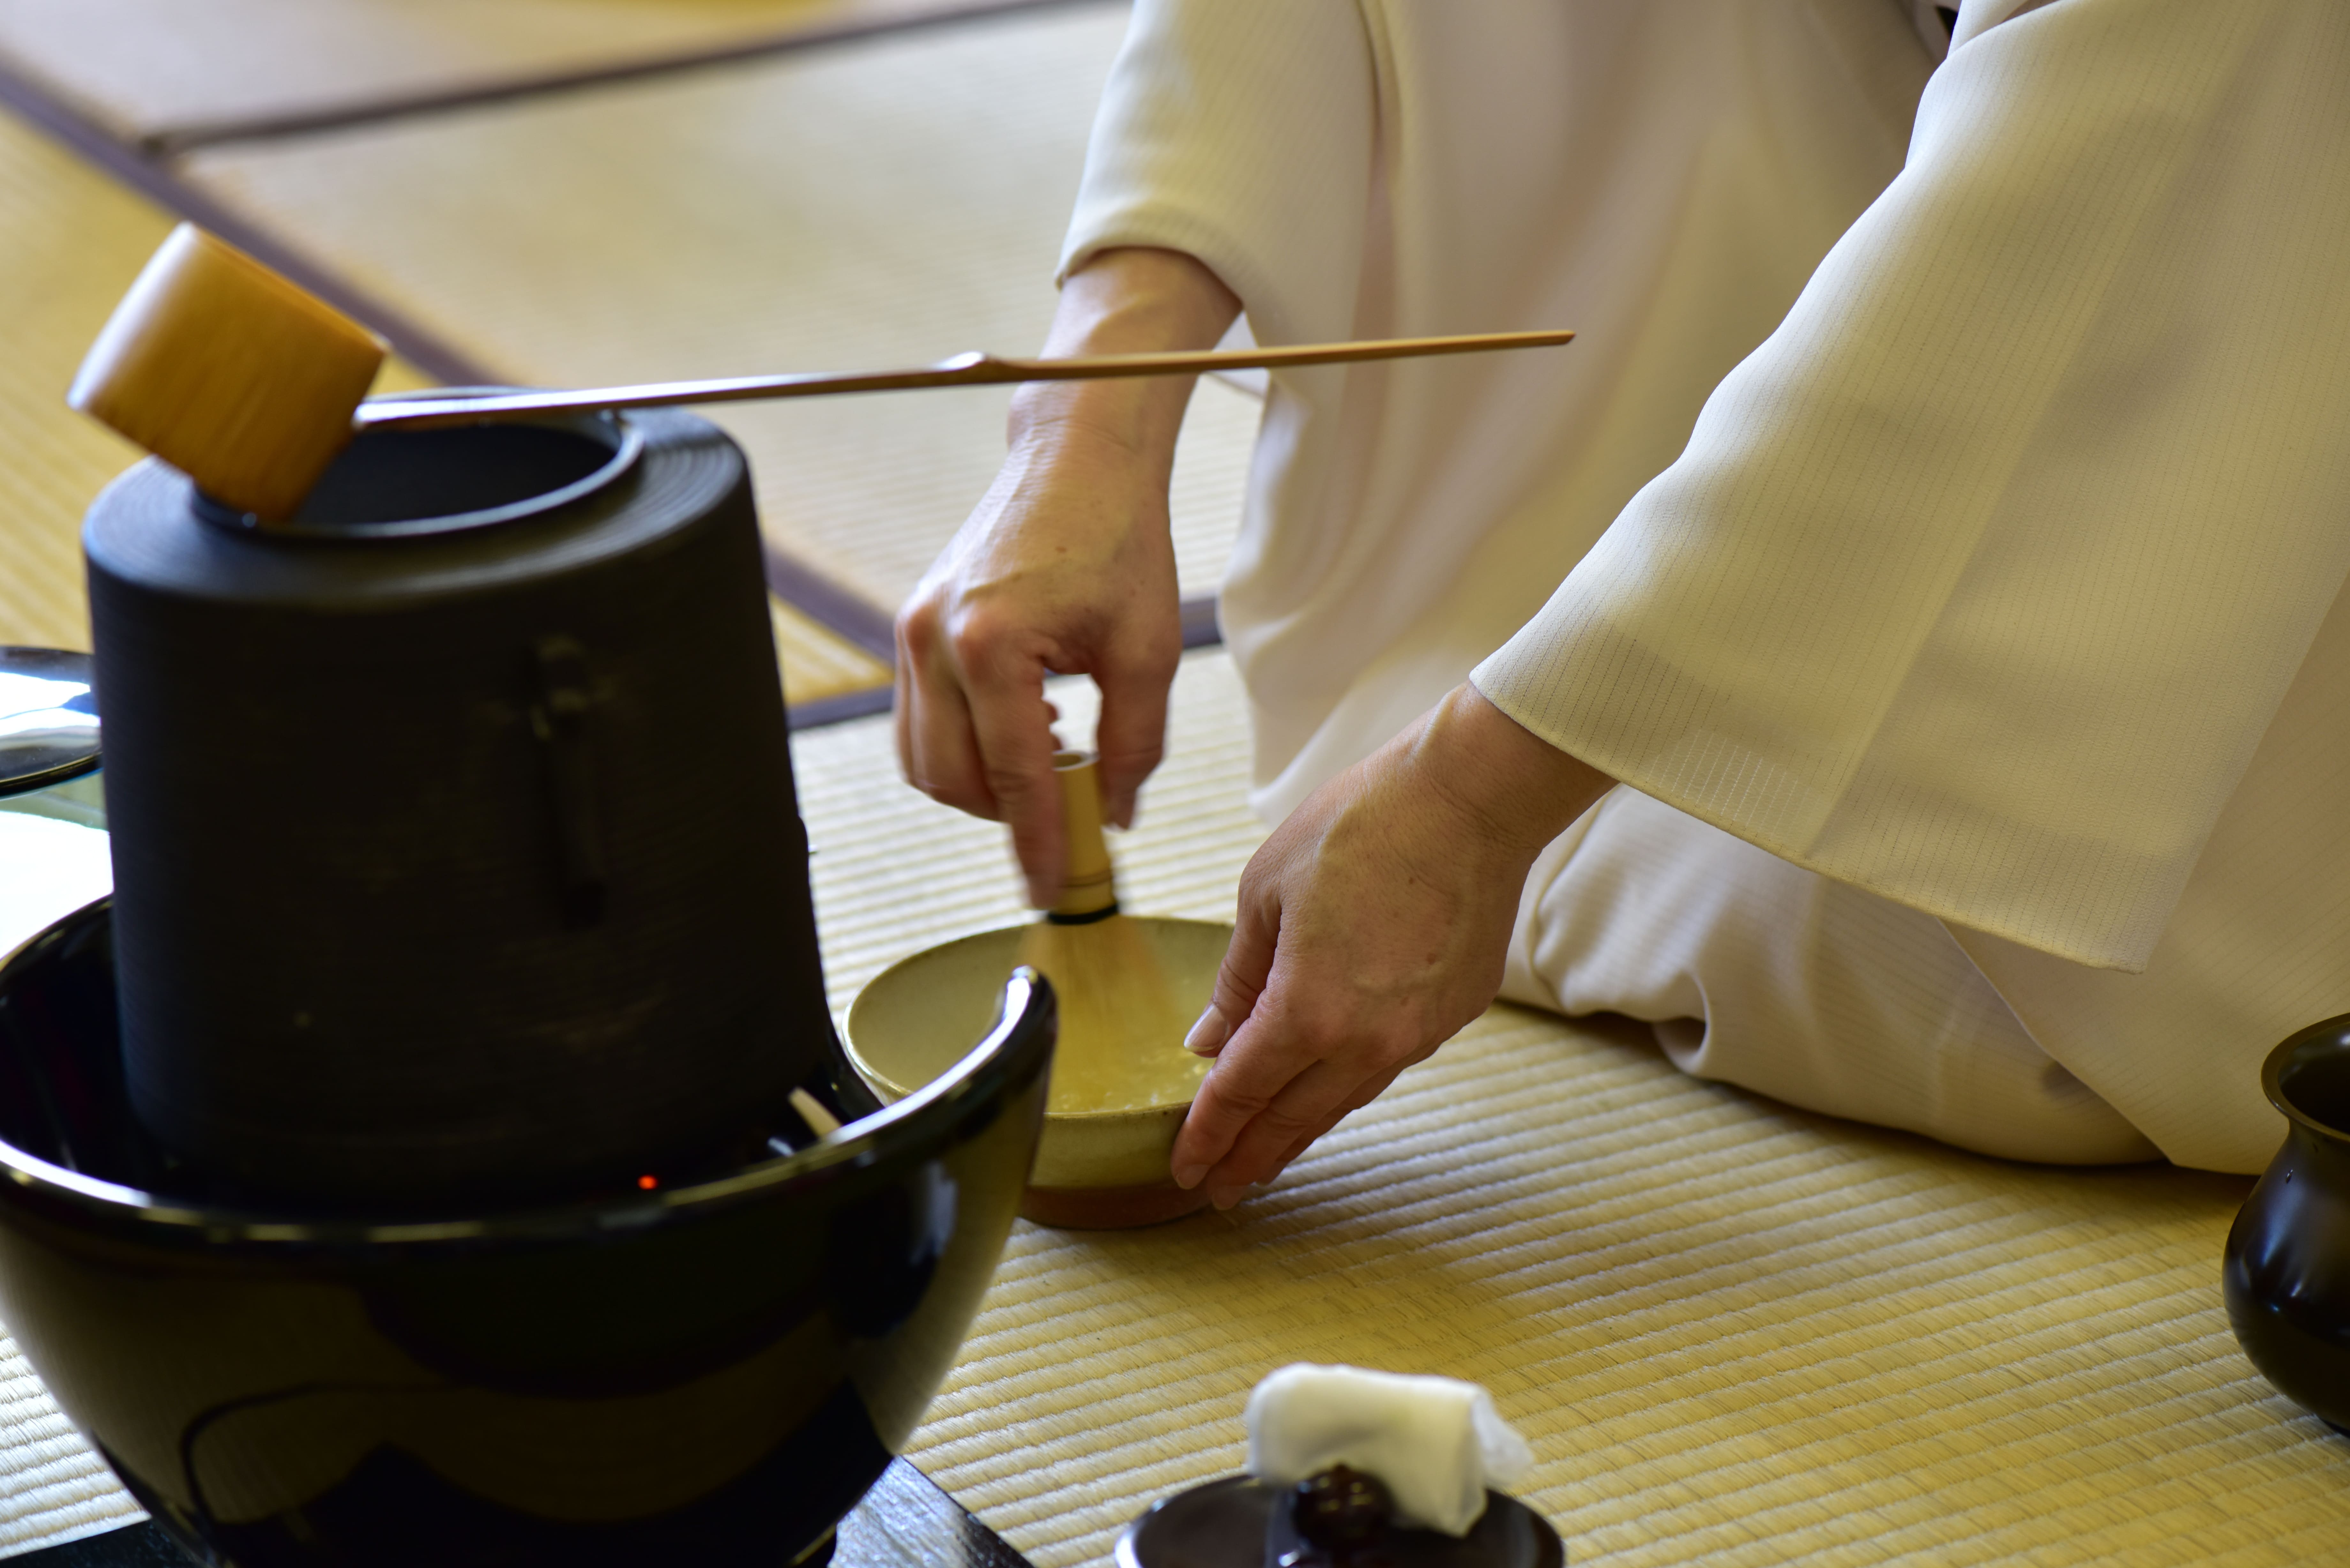 【伝統芸能の茶道】茶道具の名前や使い方を紹介します - wakore 和の暮らしメディア